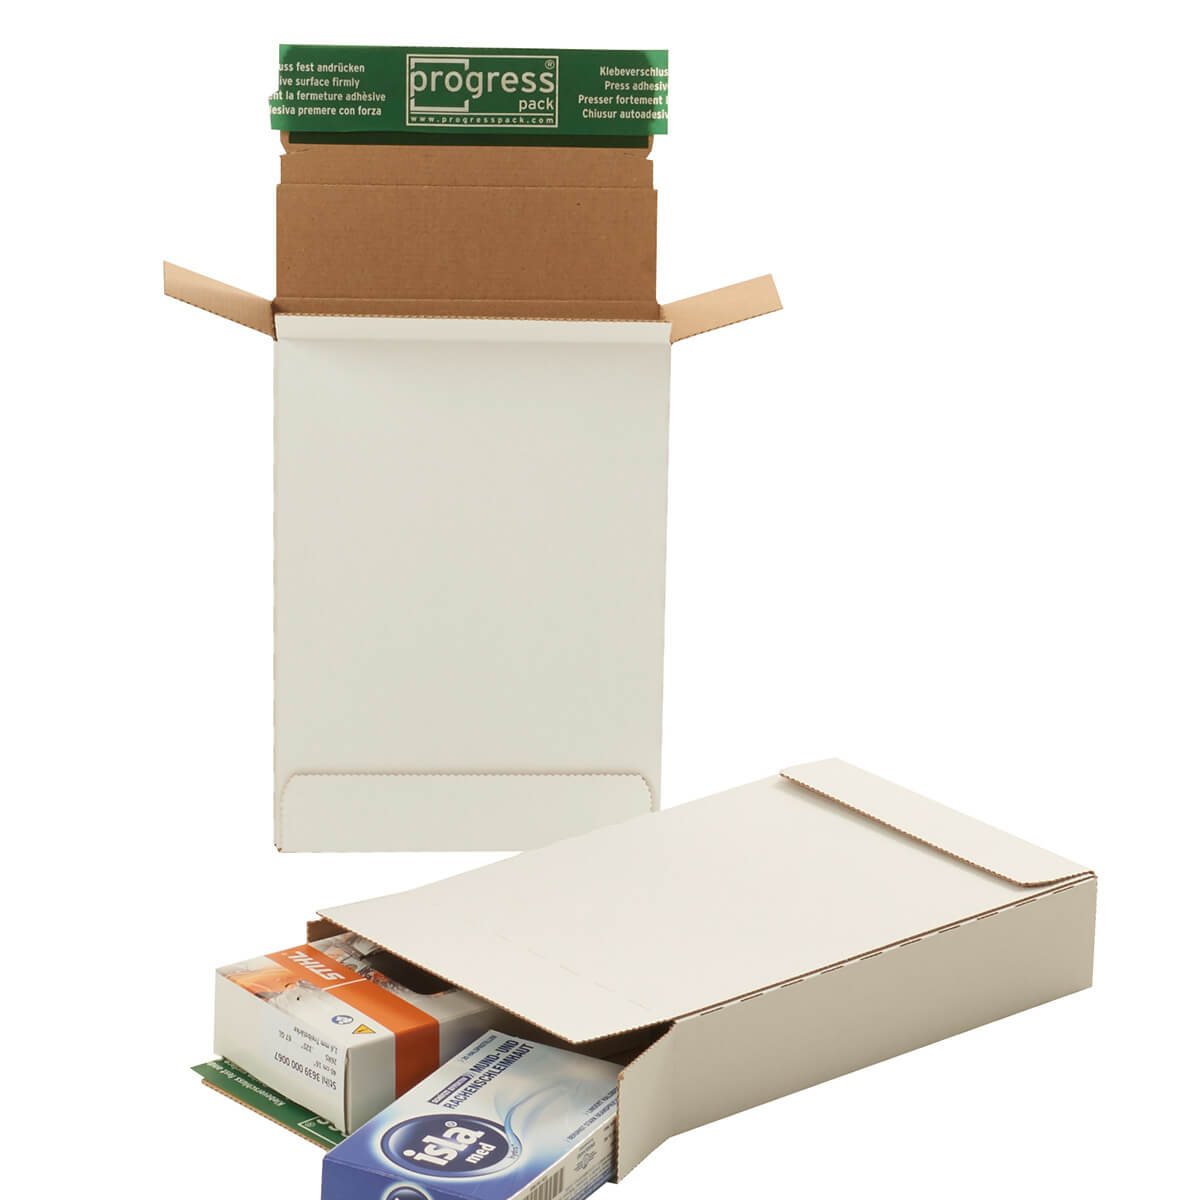 Briefbox Maxibriefkarton 215x155x45 mm DIN A5+ selbstklebend + Aufreißfaden, weiß - progressPACK